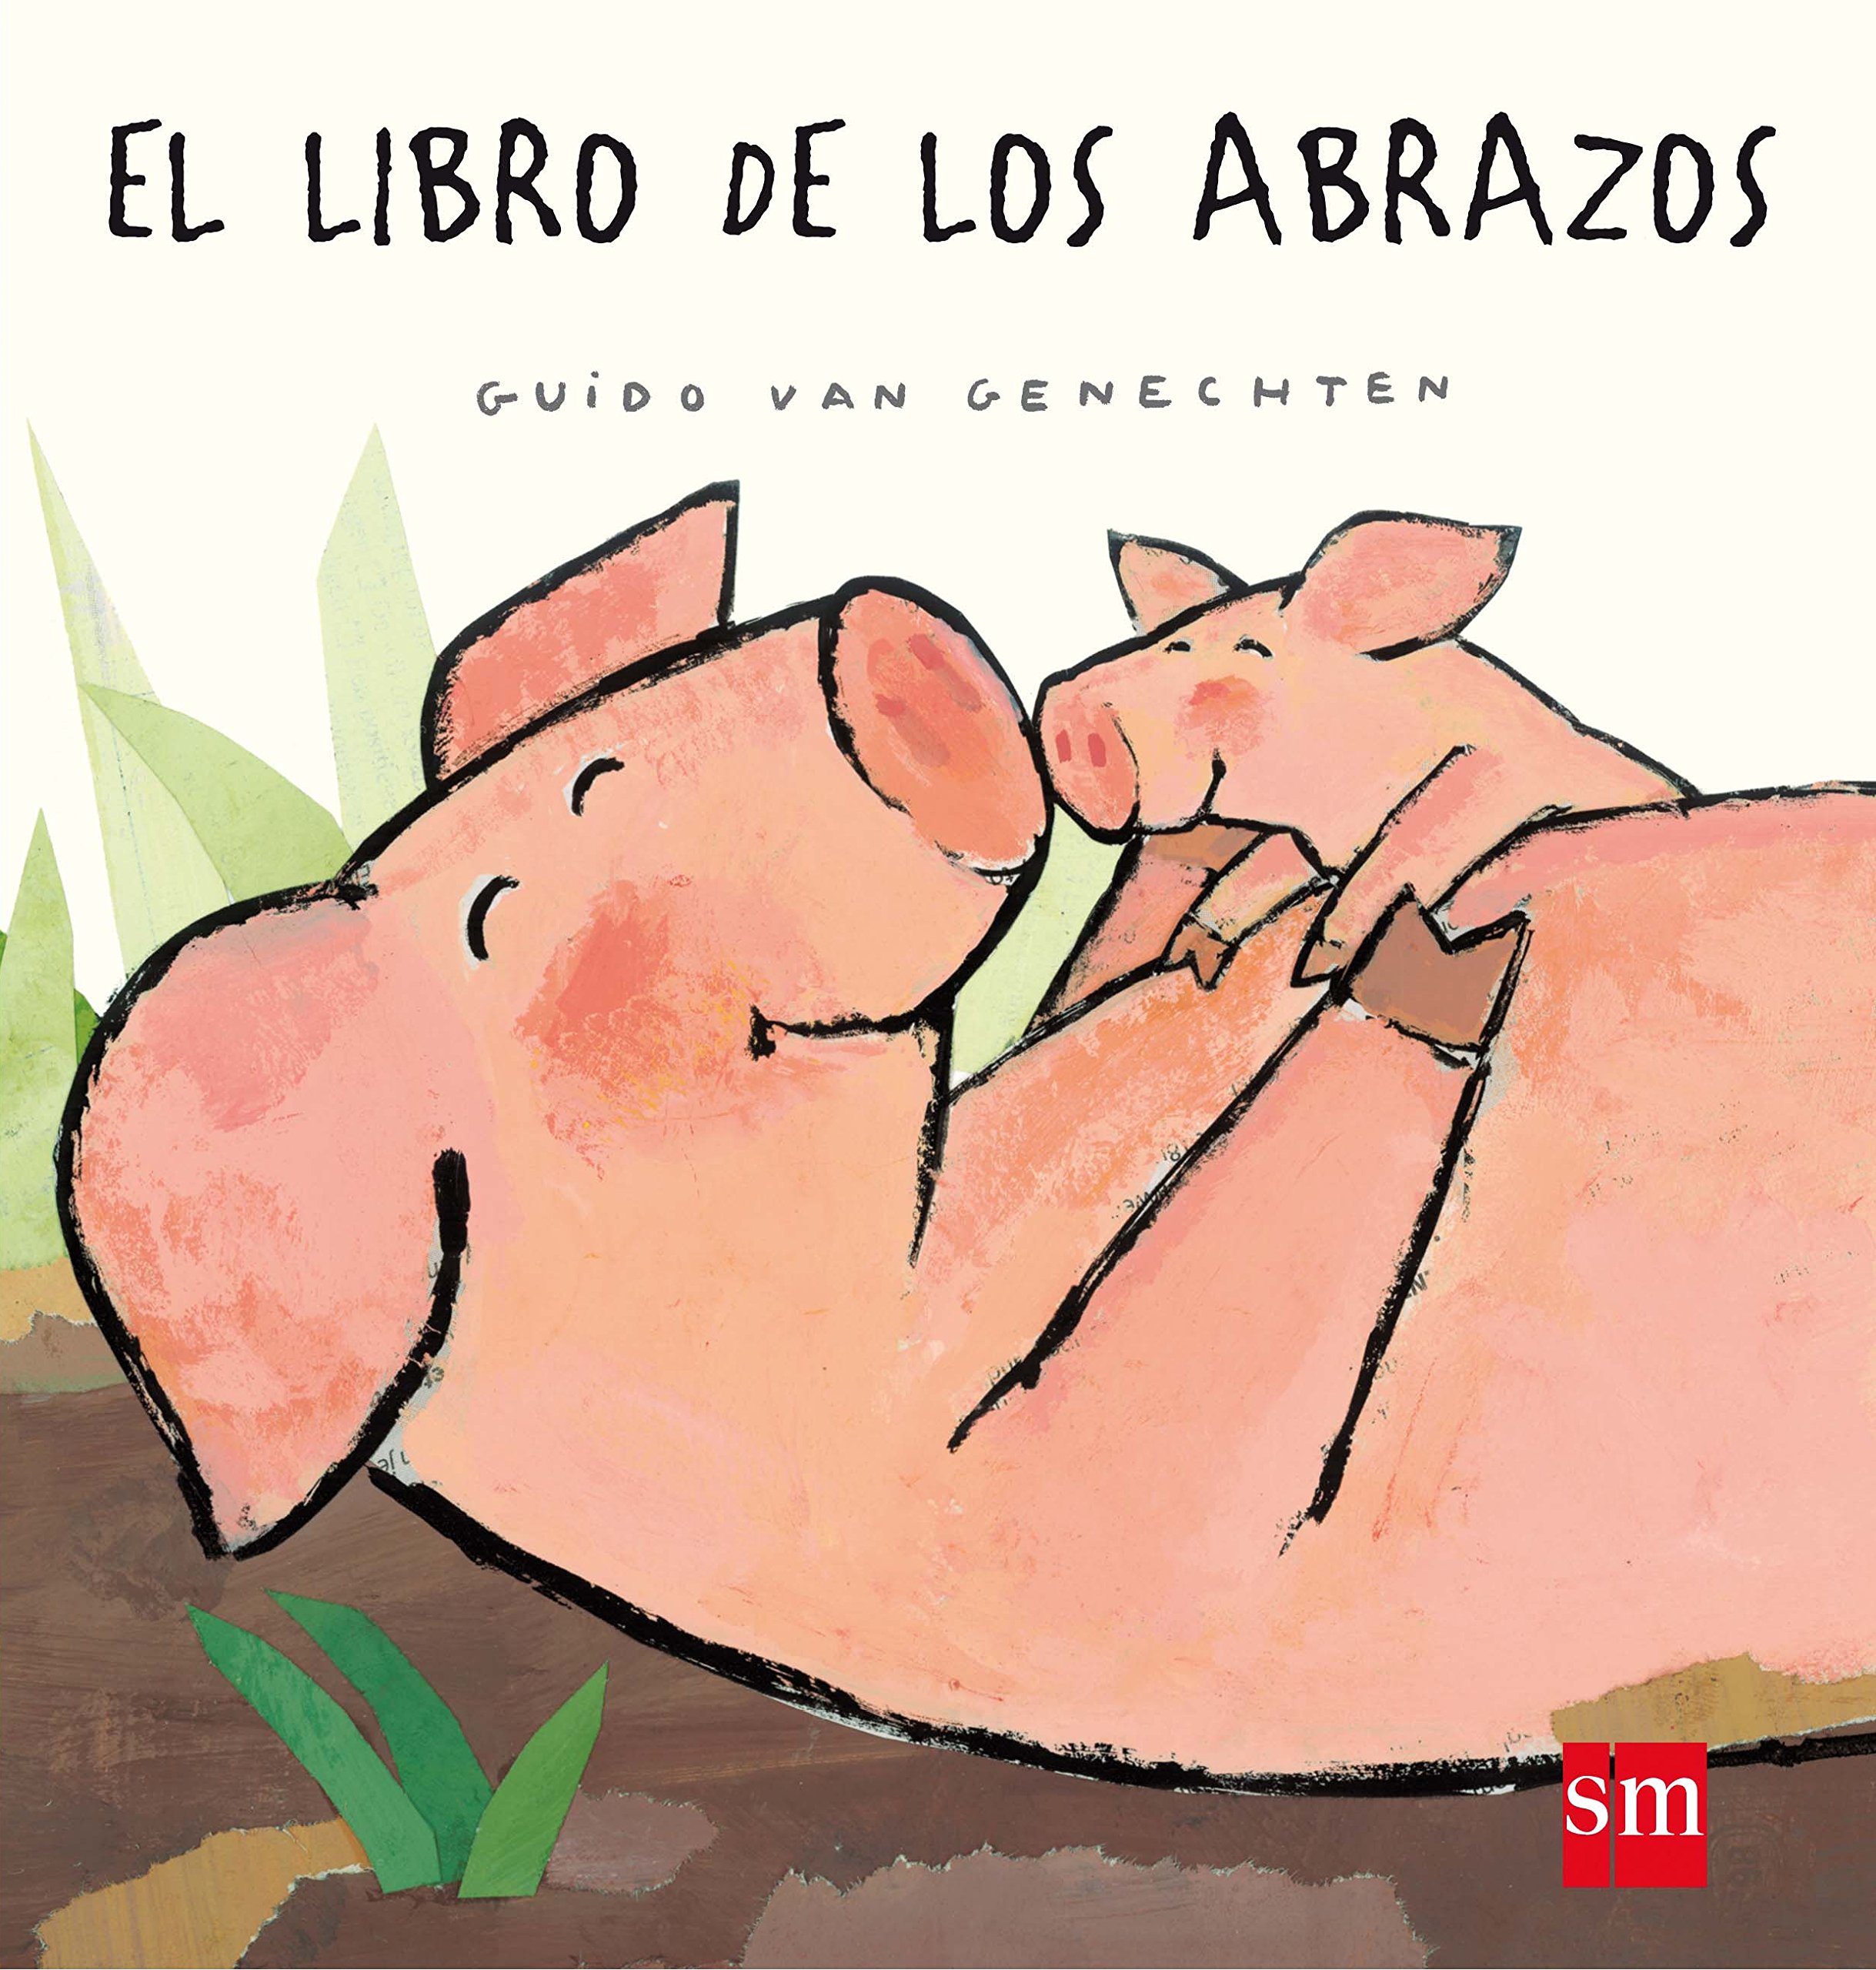 Libros infantiles 4 años - a 6 años Esmartribu